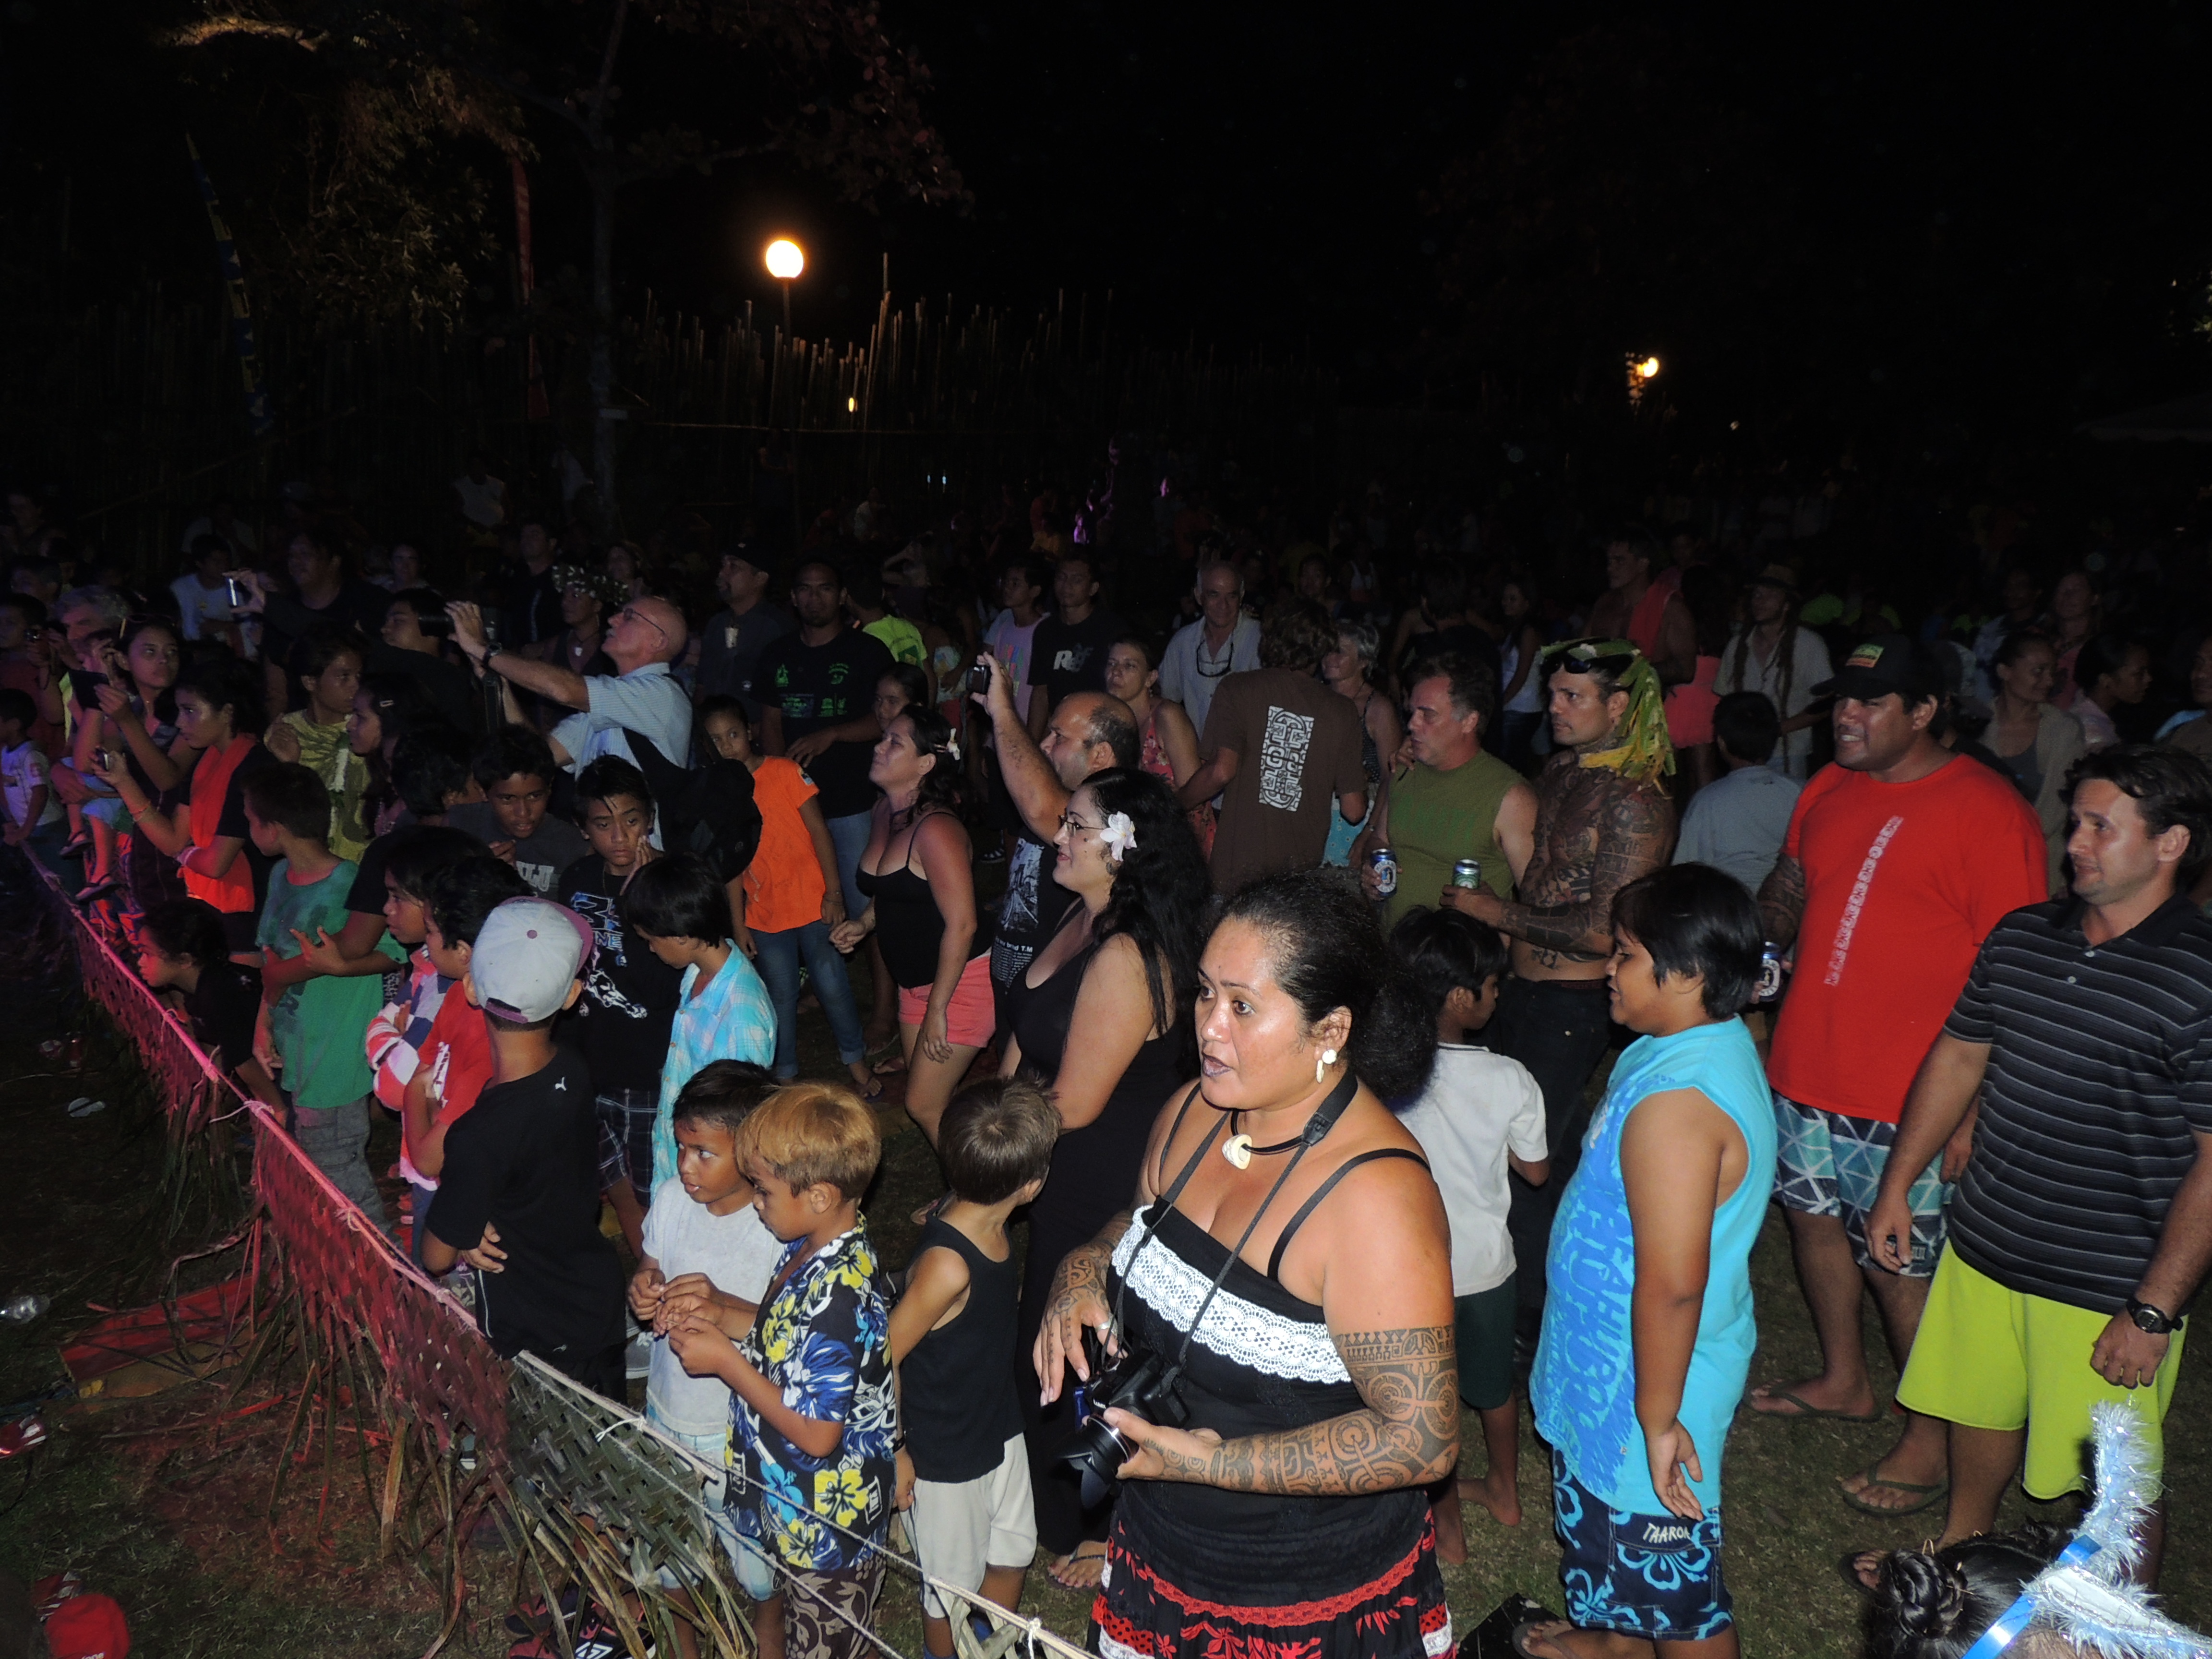 Toute la population de l'île de Nuku hiva s'était déplacée pour honorer ce tout premier festival de la chanson moderne marquisienne.